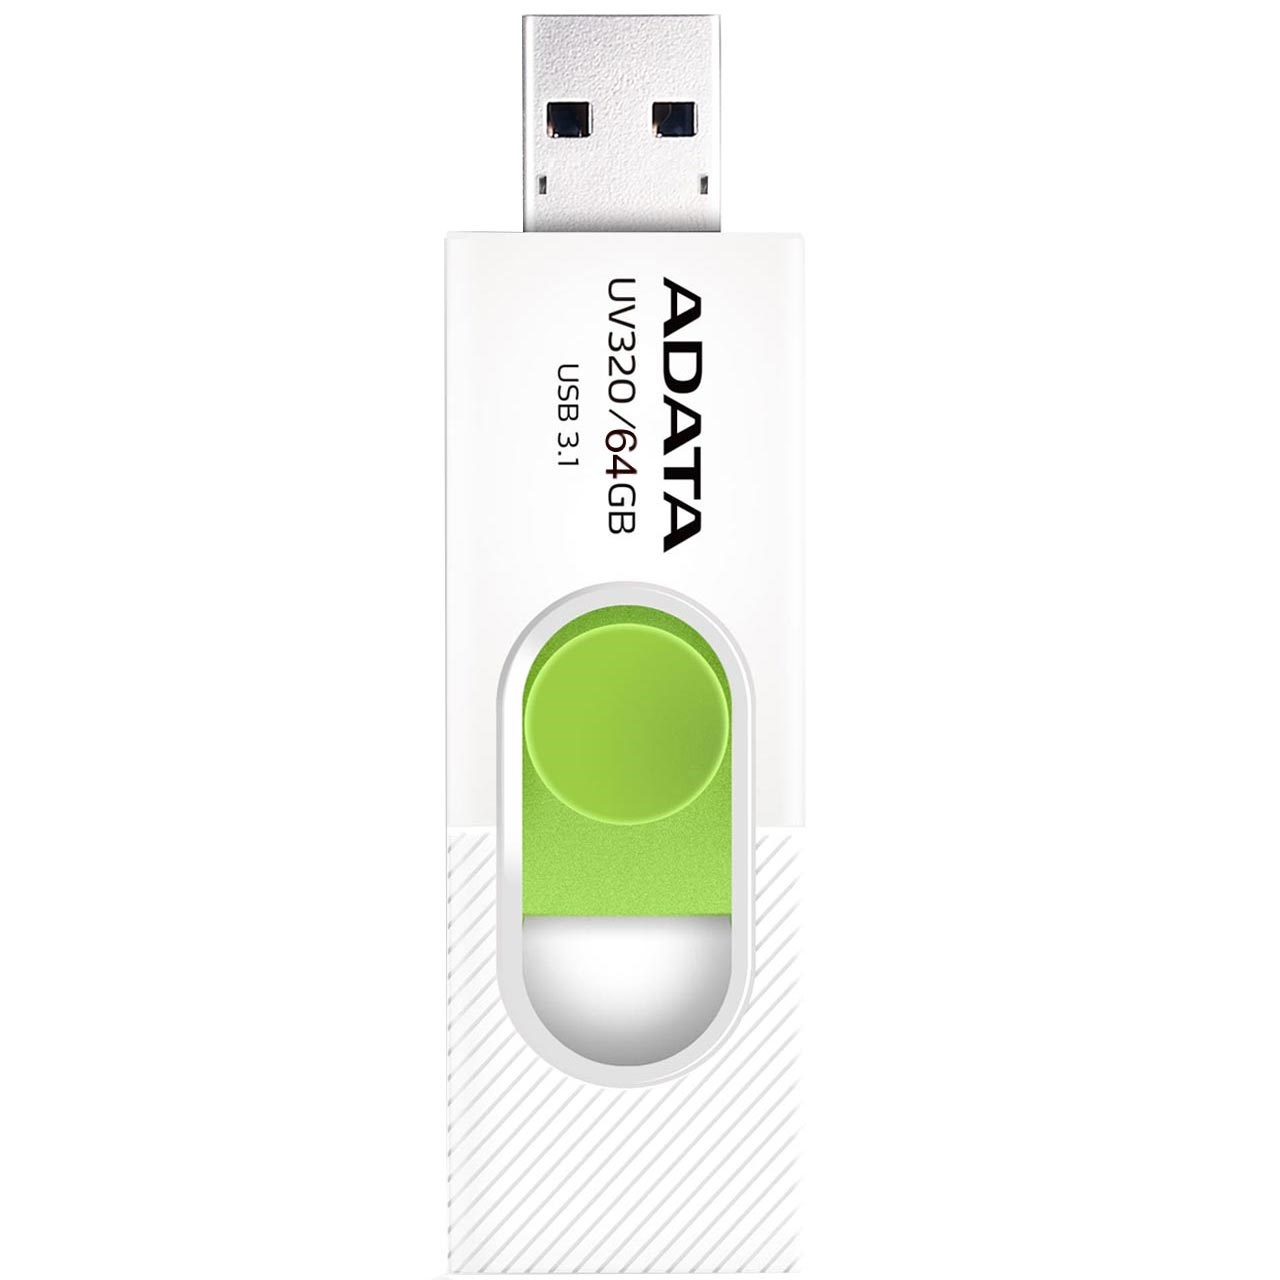 خرید،قیمت و مشخصات فلش مموری USB 3.1 ای دیتا UV320 ظرفیت 64 گیگابایت - قائم آی تی